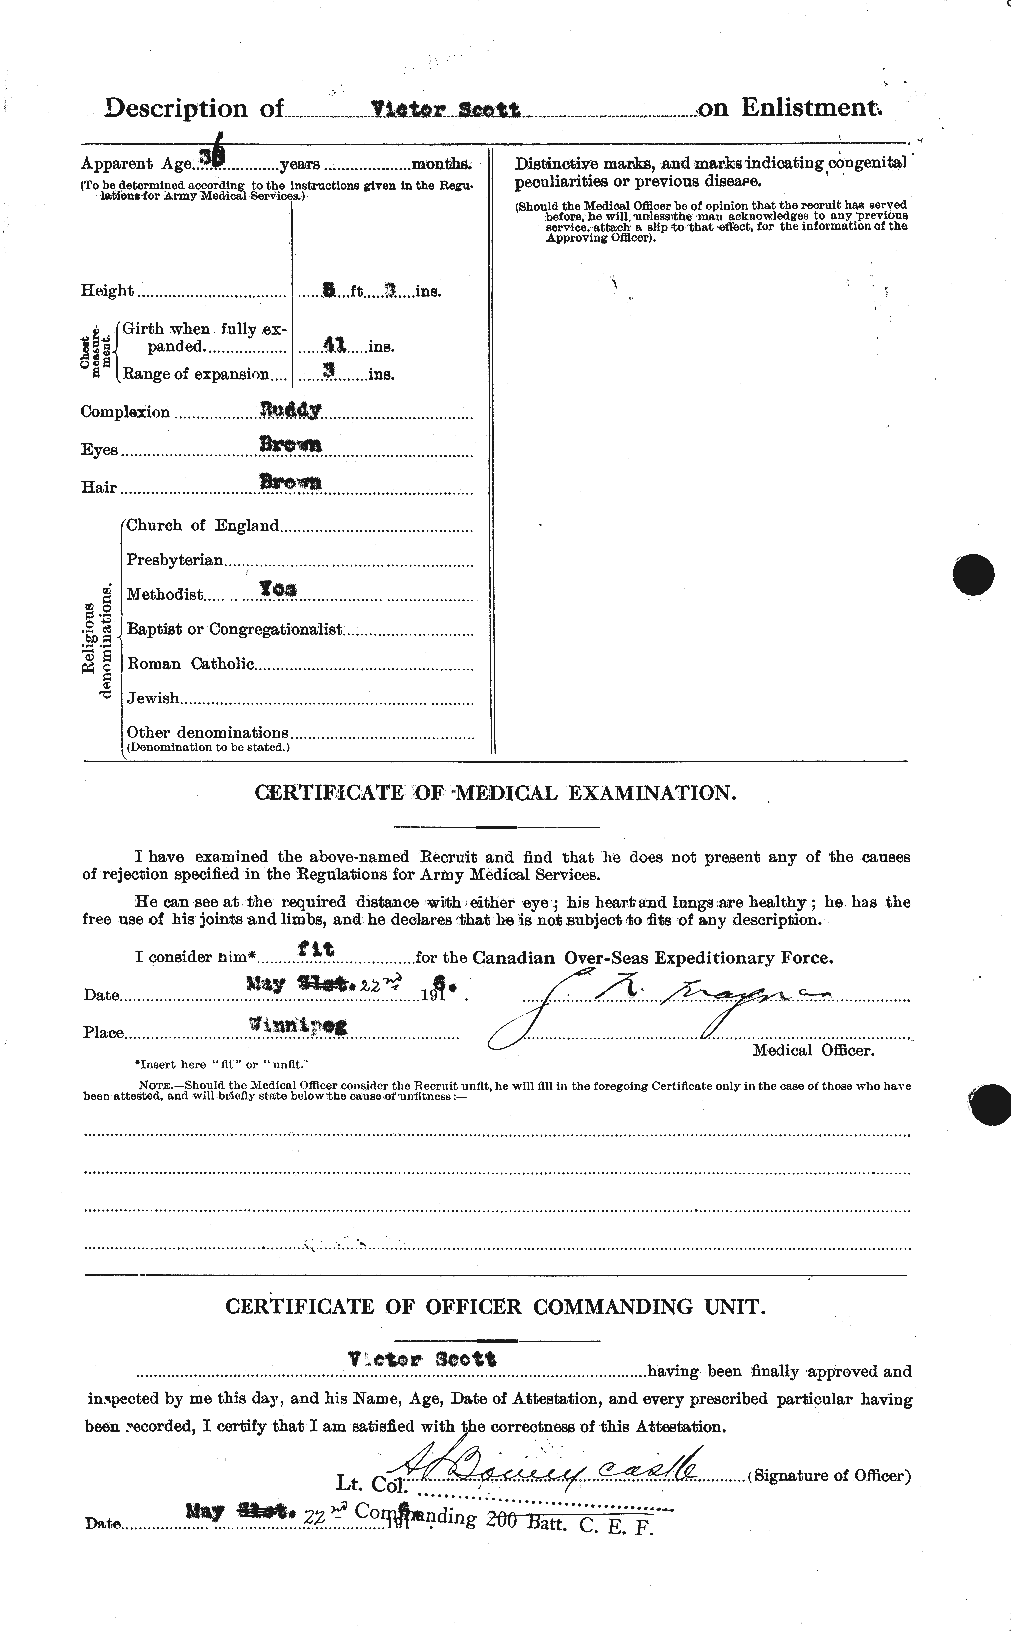 Dossiers du Personnel de la Première Guerre mondiale - CEC 088205b